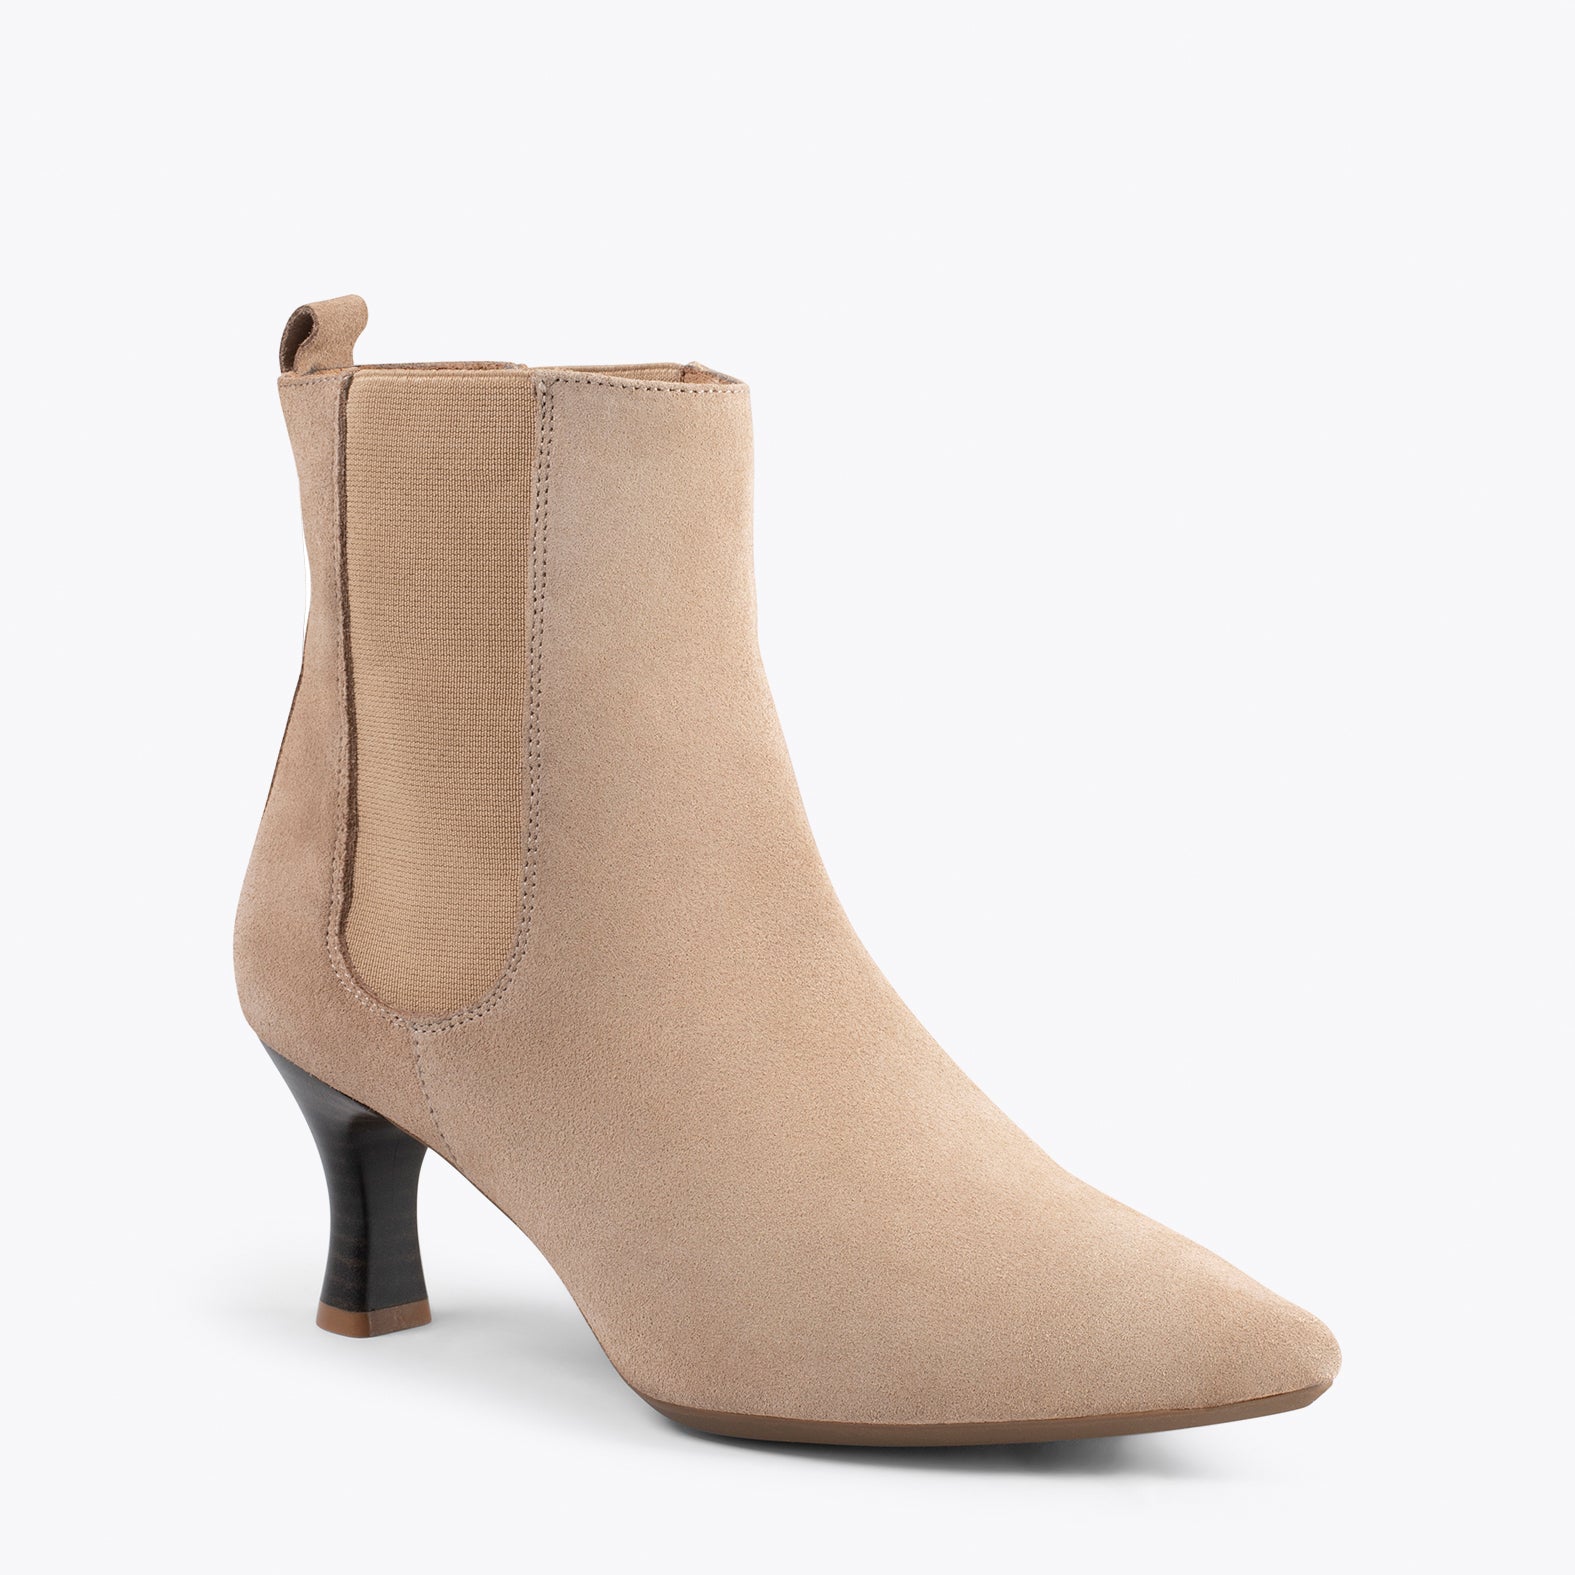 CHIC – BEIGE chelsea high heel booties